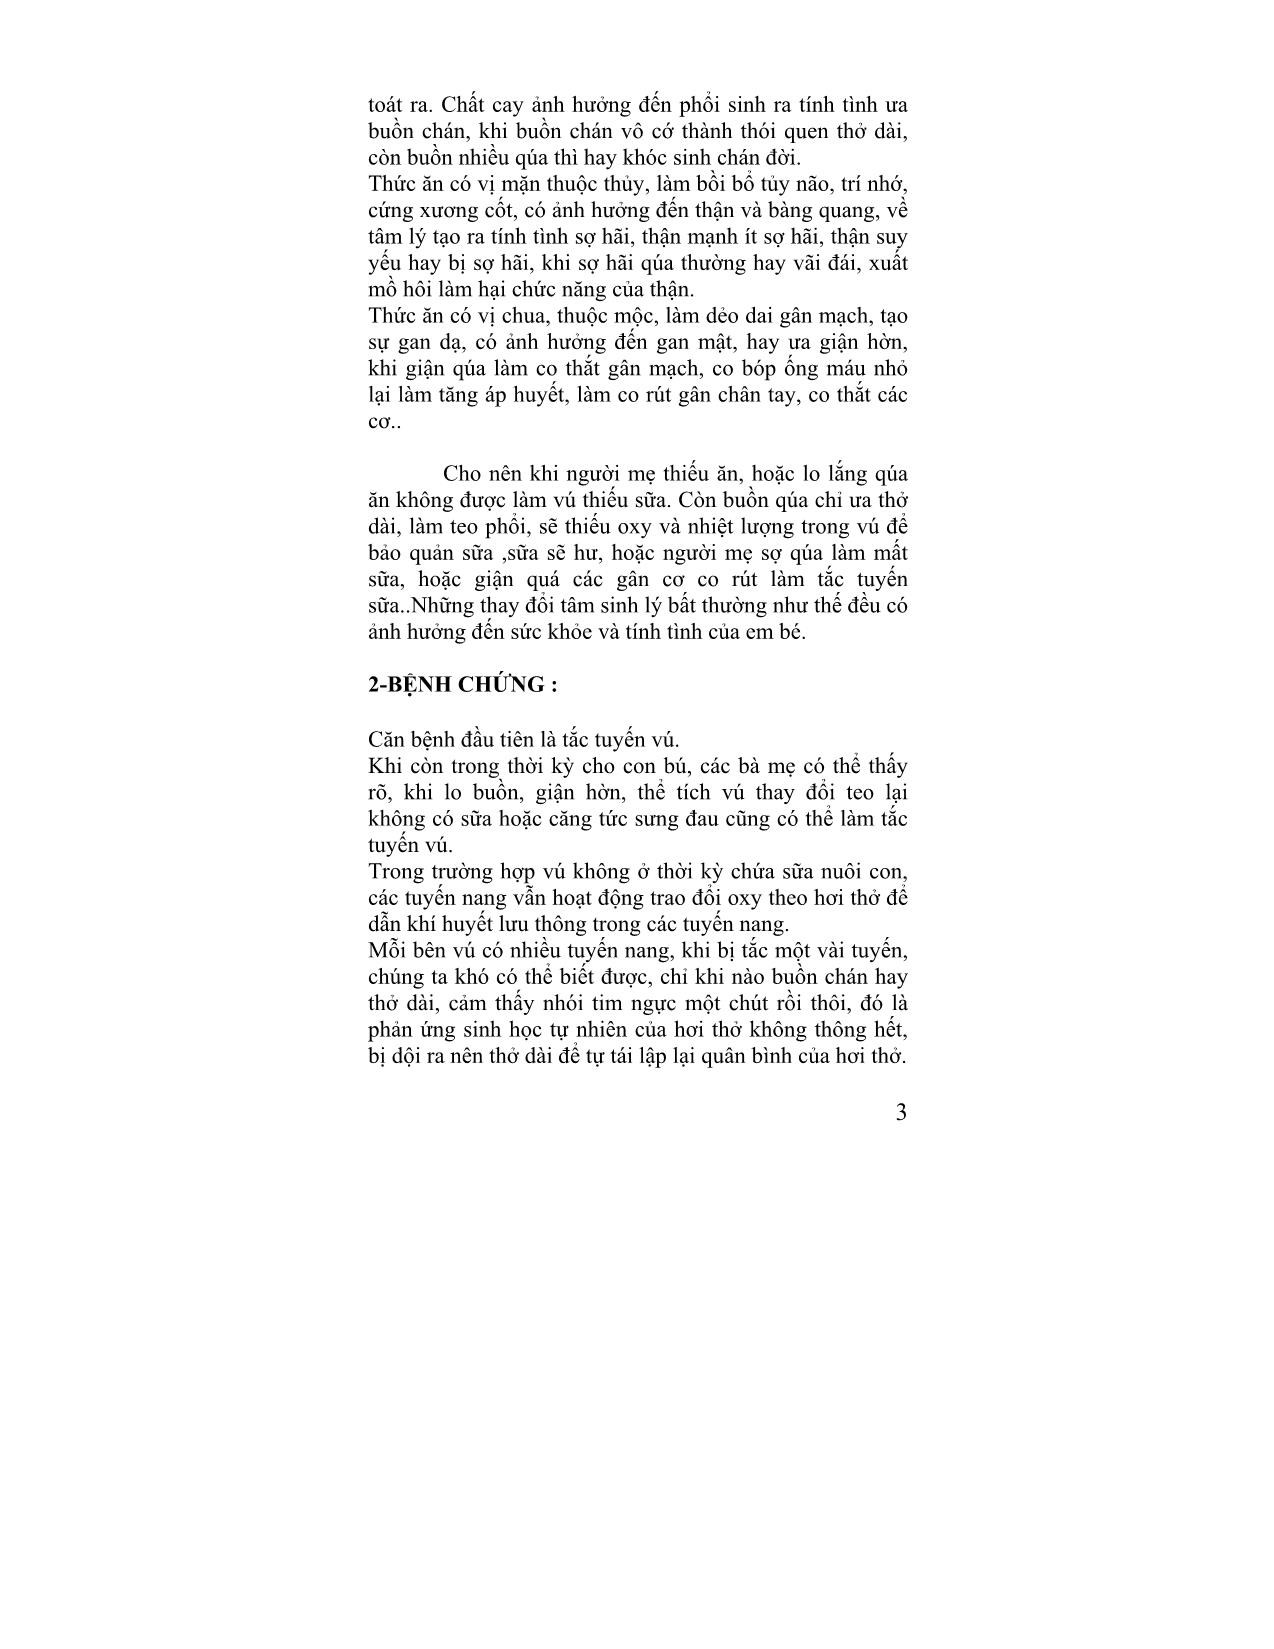 Giáo trình Câu chuyện đông y (Tập 4) trang 3